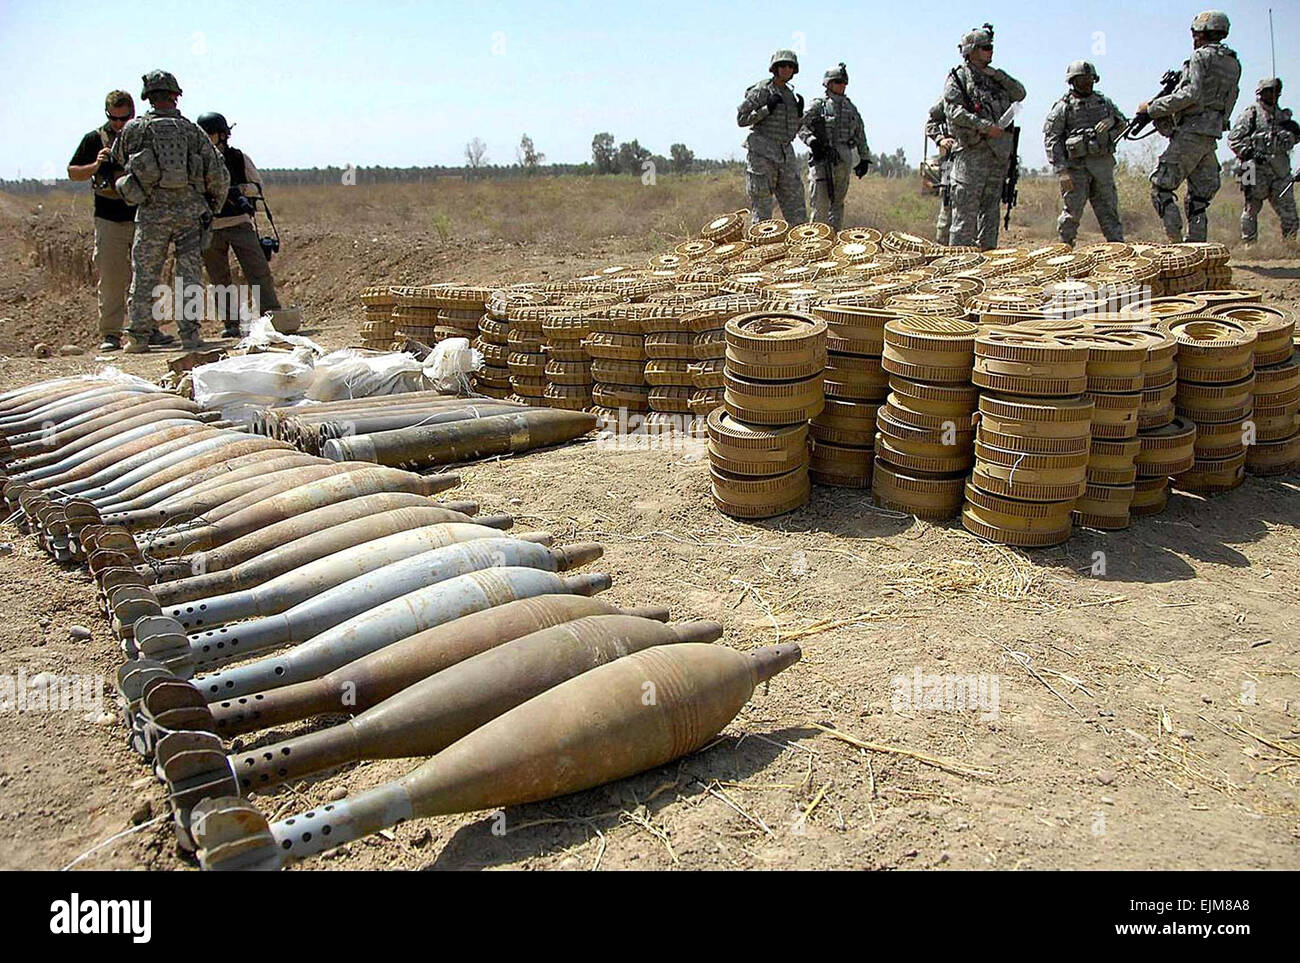 La Police nationale irakienne et des soldats de l'armée américaine pour le transport d'armes saisis avant-poste de commande Cashe 13 Avril 2008 près de Abu Thayla, de l'Iraq. Banque D'Images